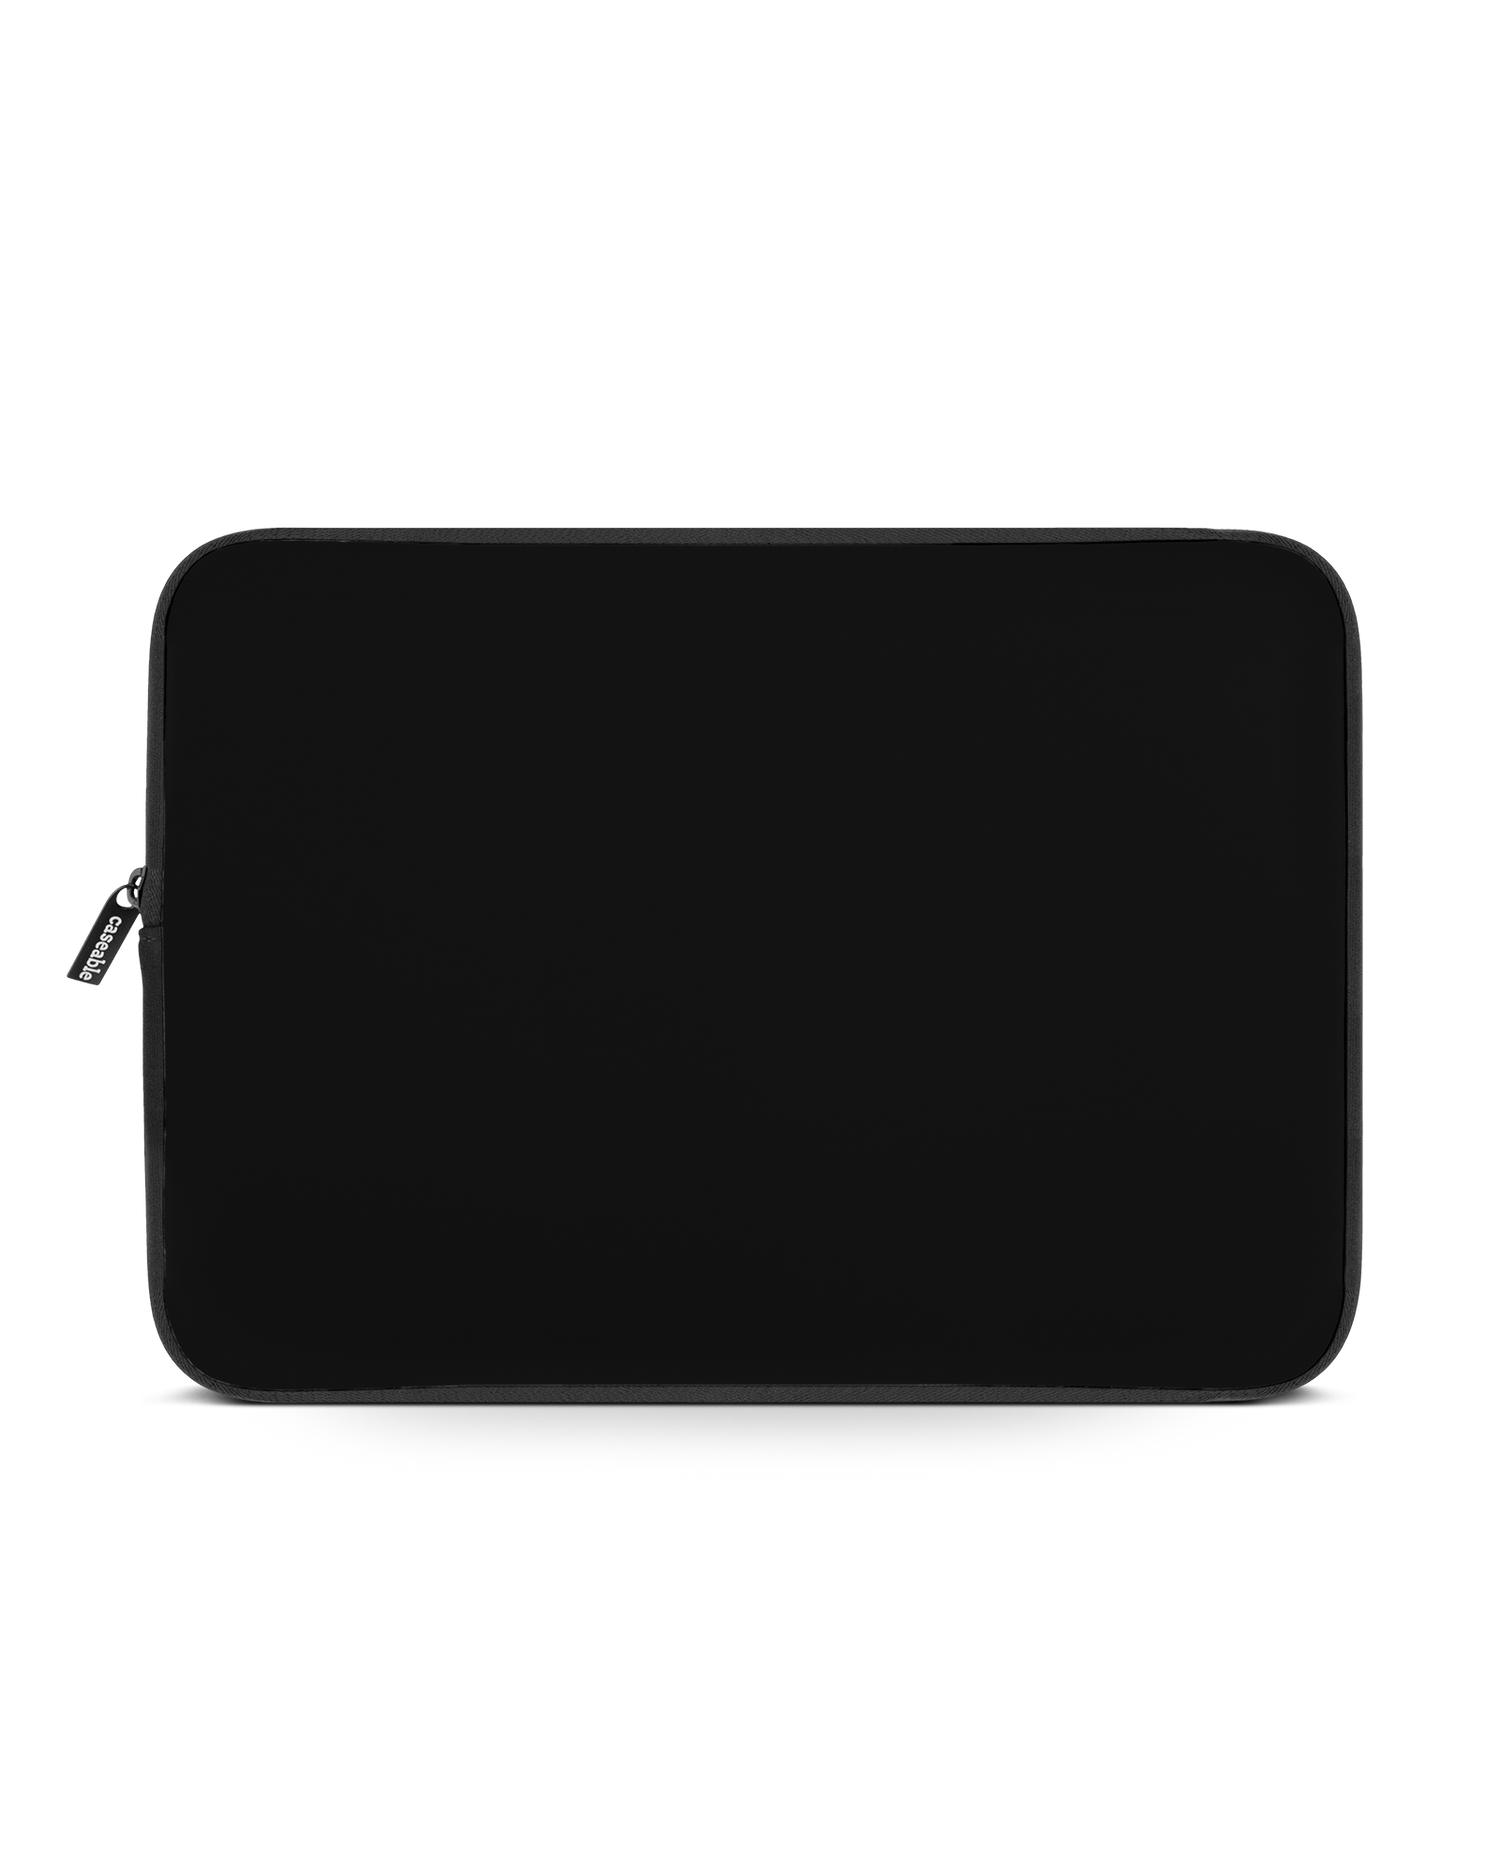 BLACK Laptophülle 14-15 Zoll: Vorderansicht